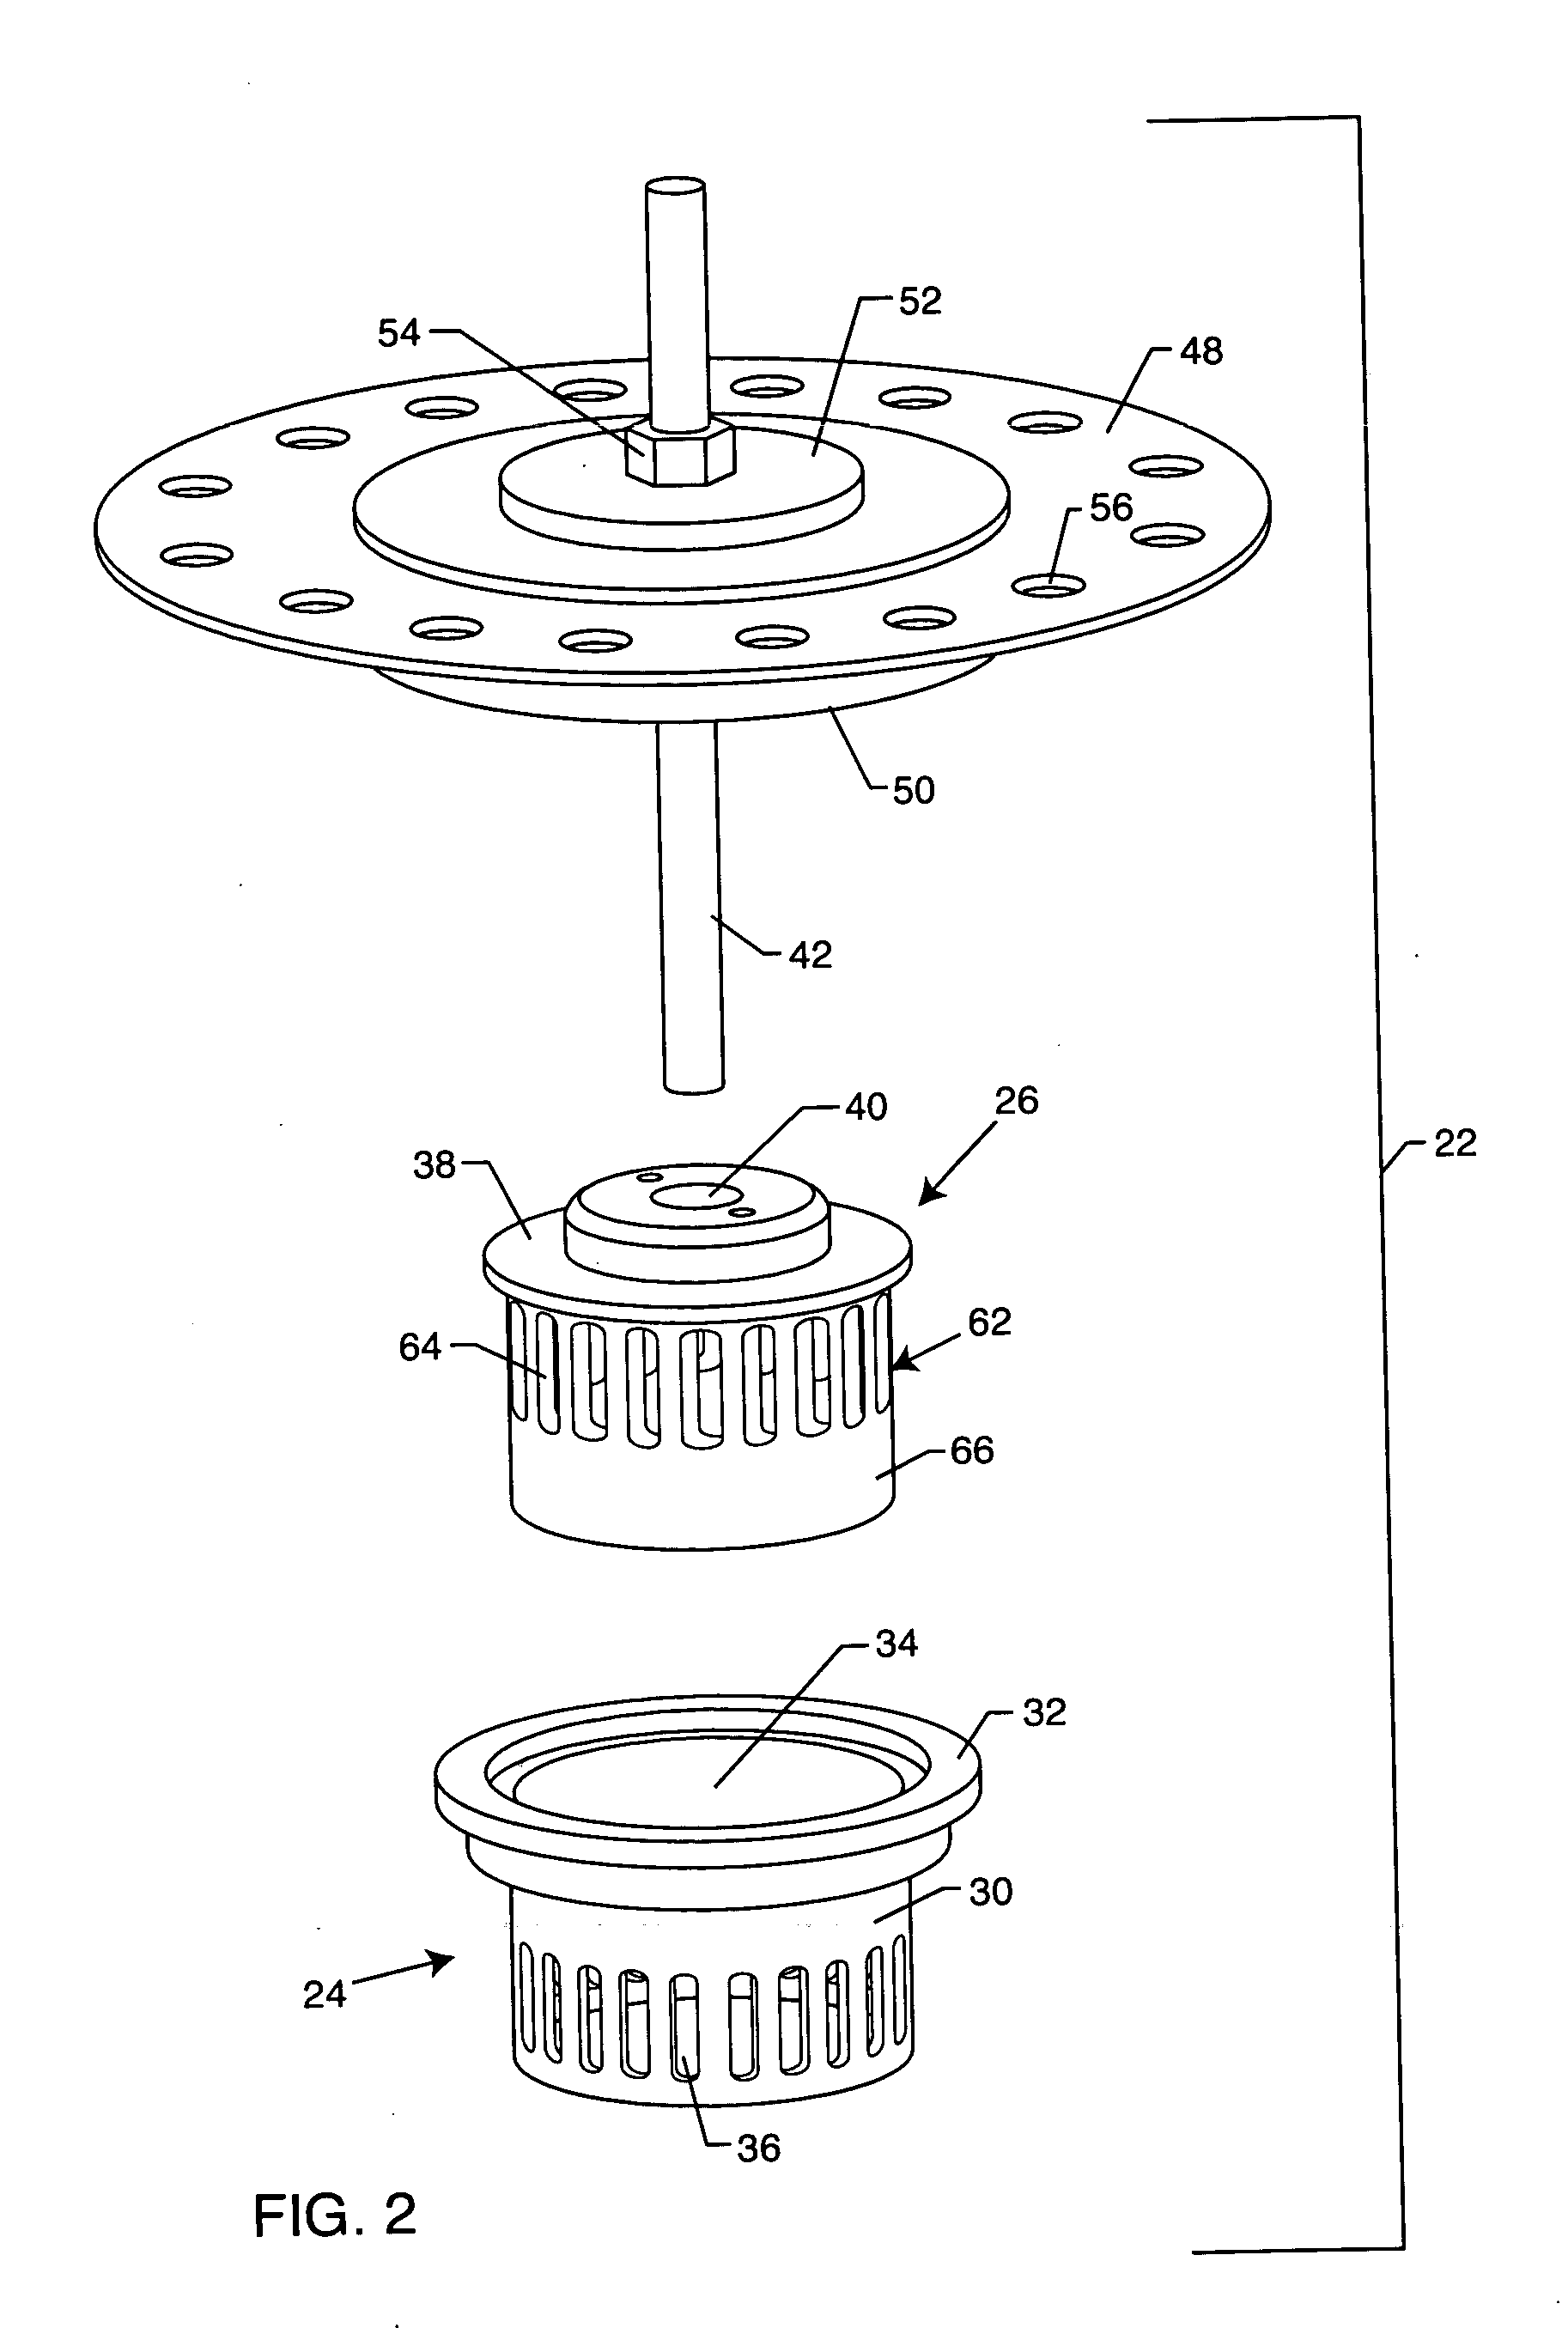 Anti-cavitation valve assembly